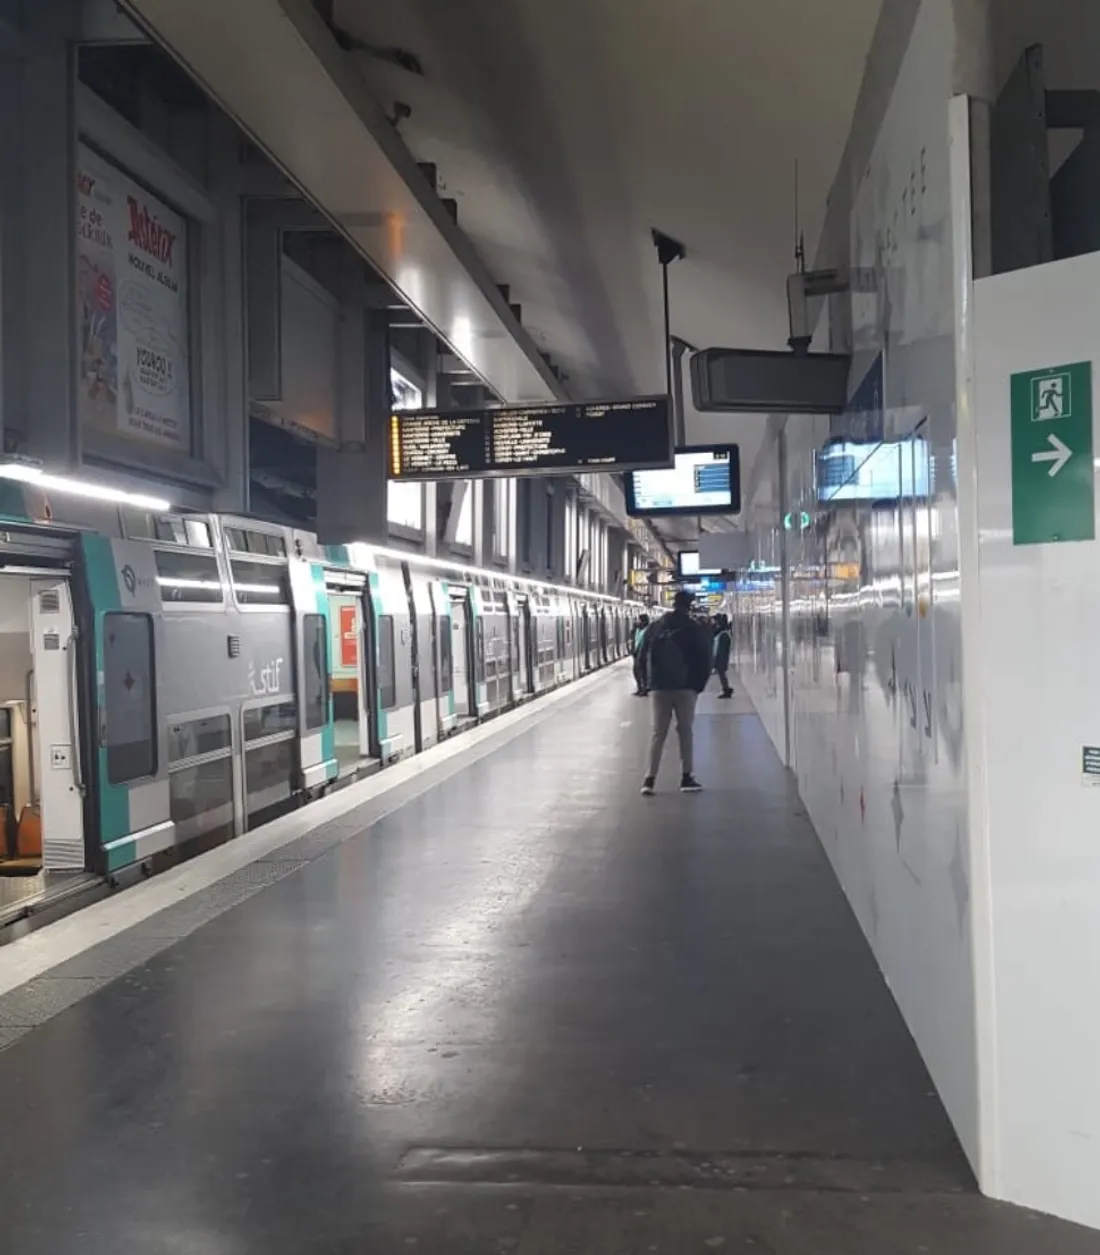 « Zéro métro, zéro RER » ! Appel à la grève le 10 novembre à la RATP